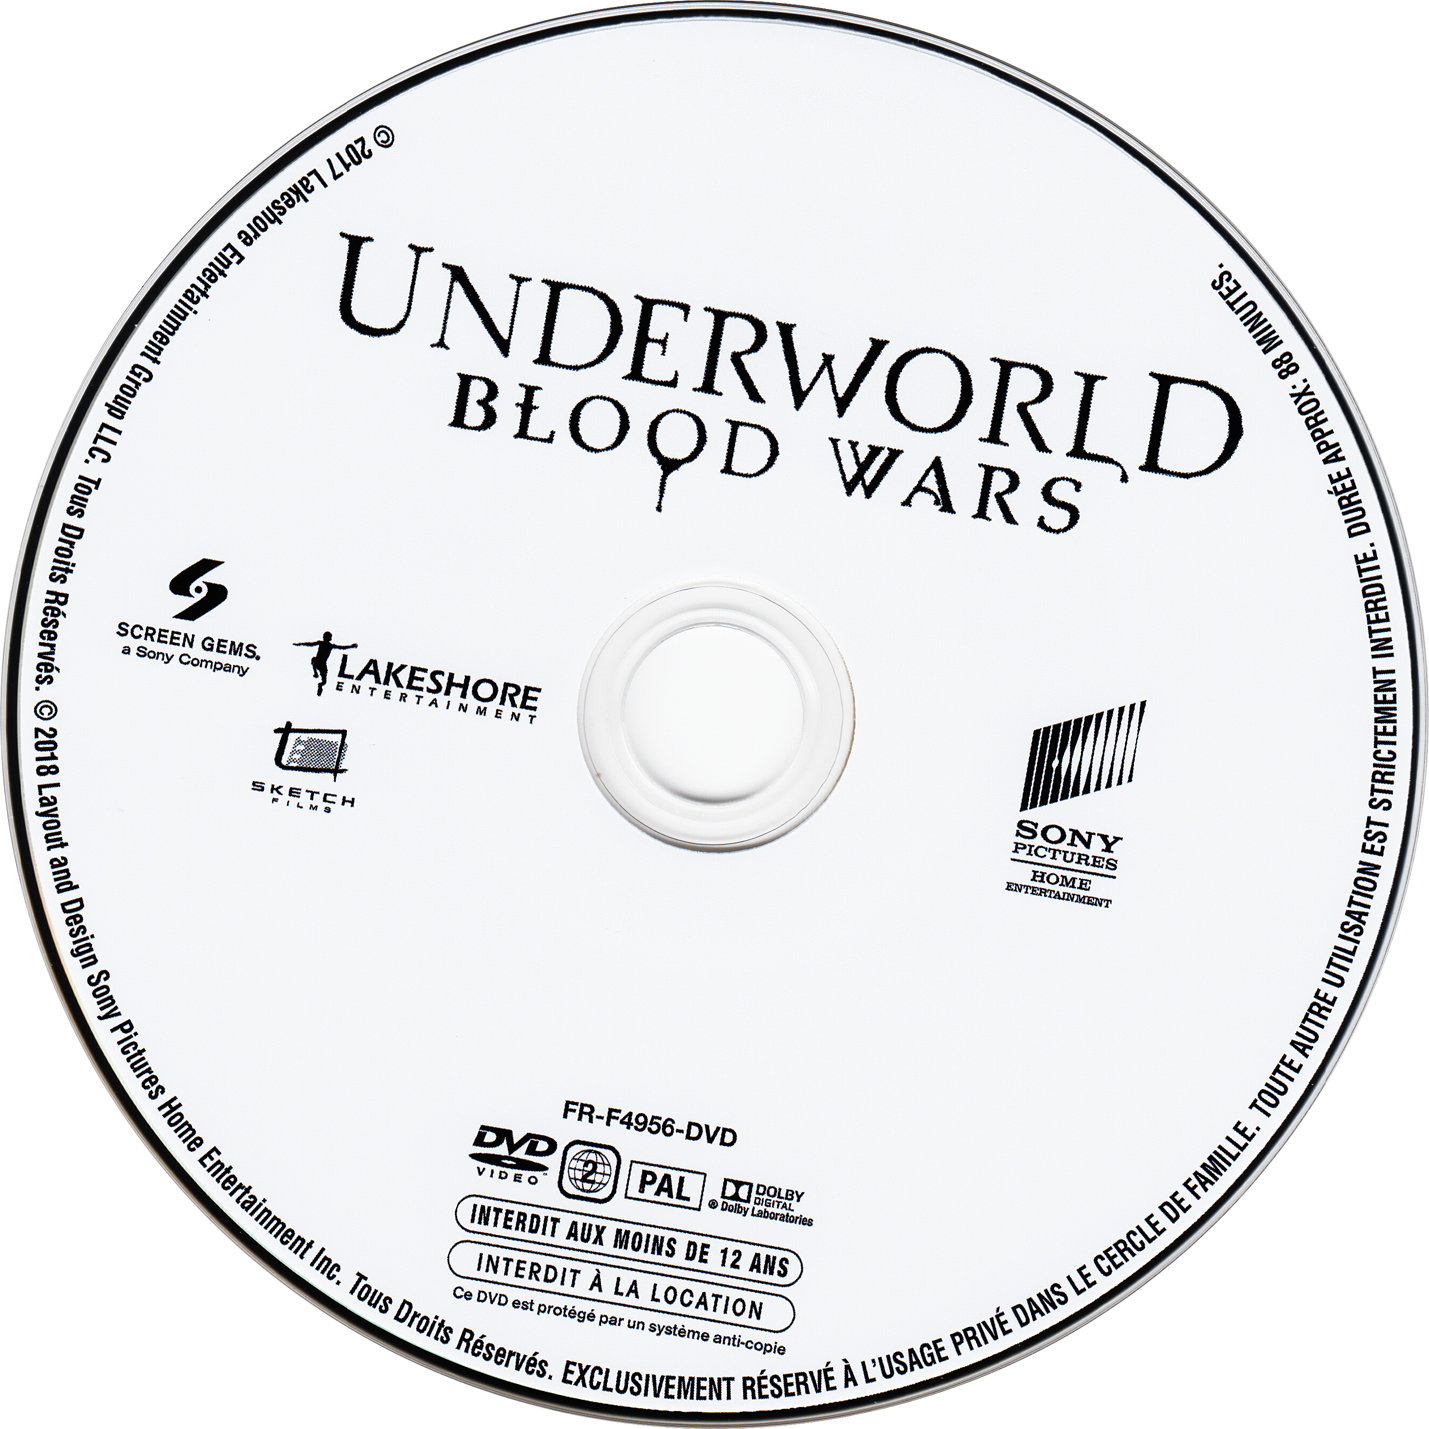 Underworld blood wars